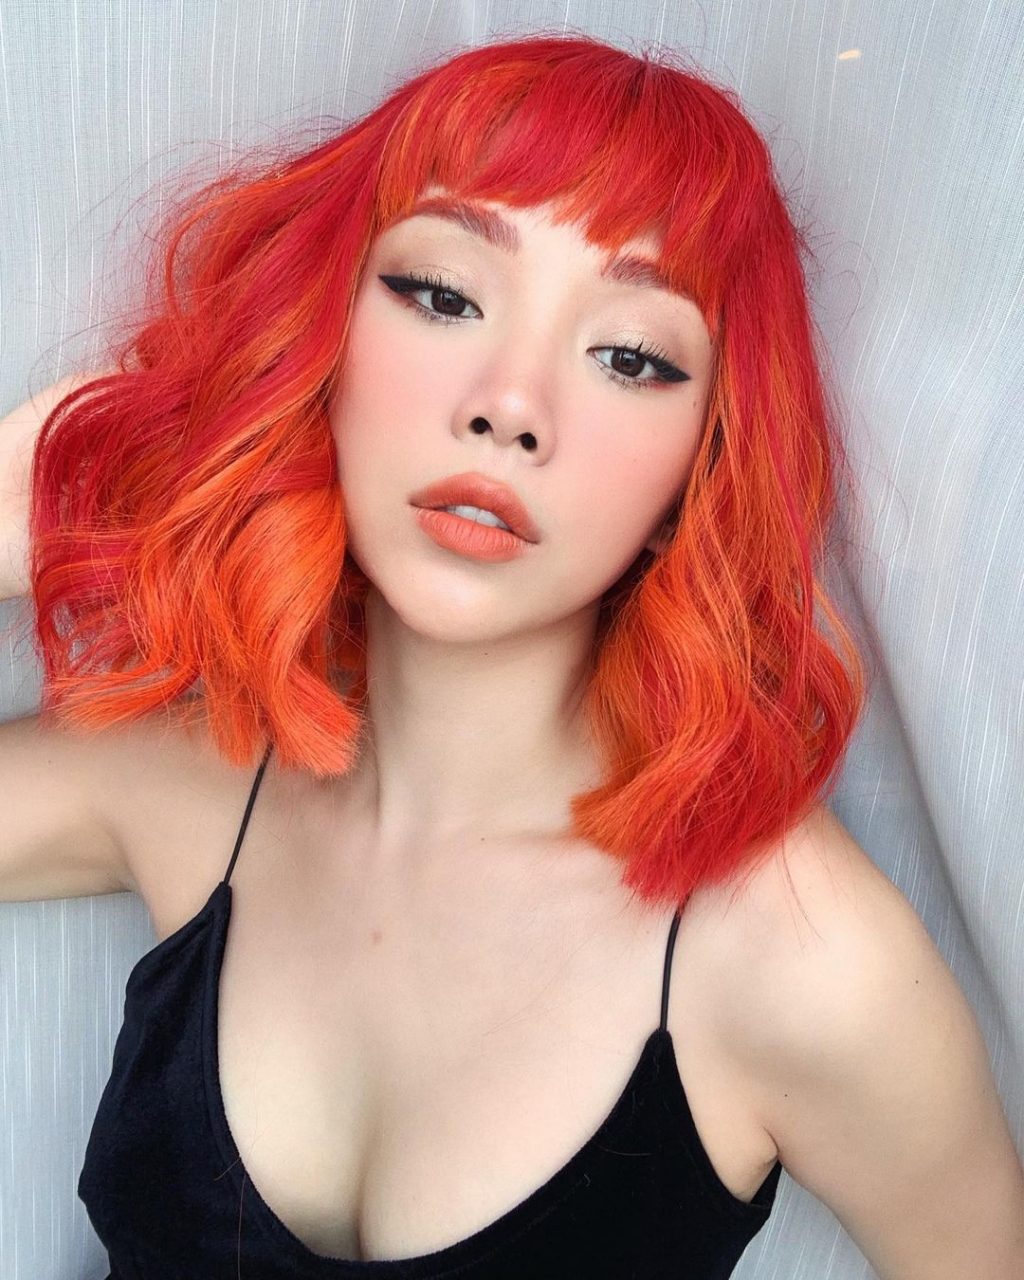 Màu tóc nhuộm cam đỏ “chất ngất” của ca sĩ Tóc Tiên